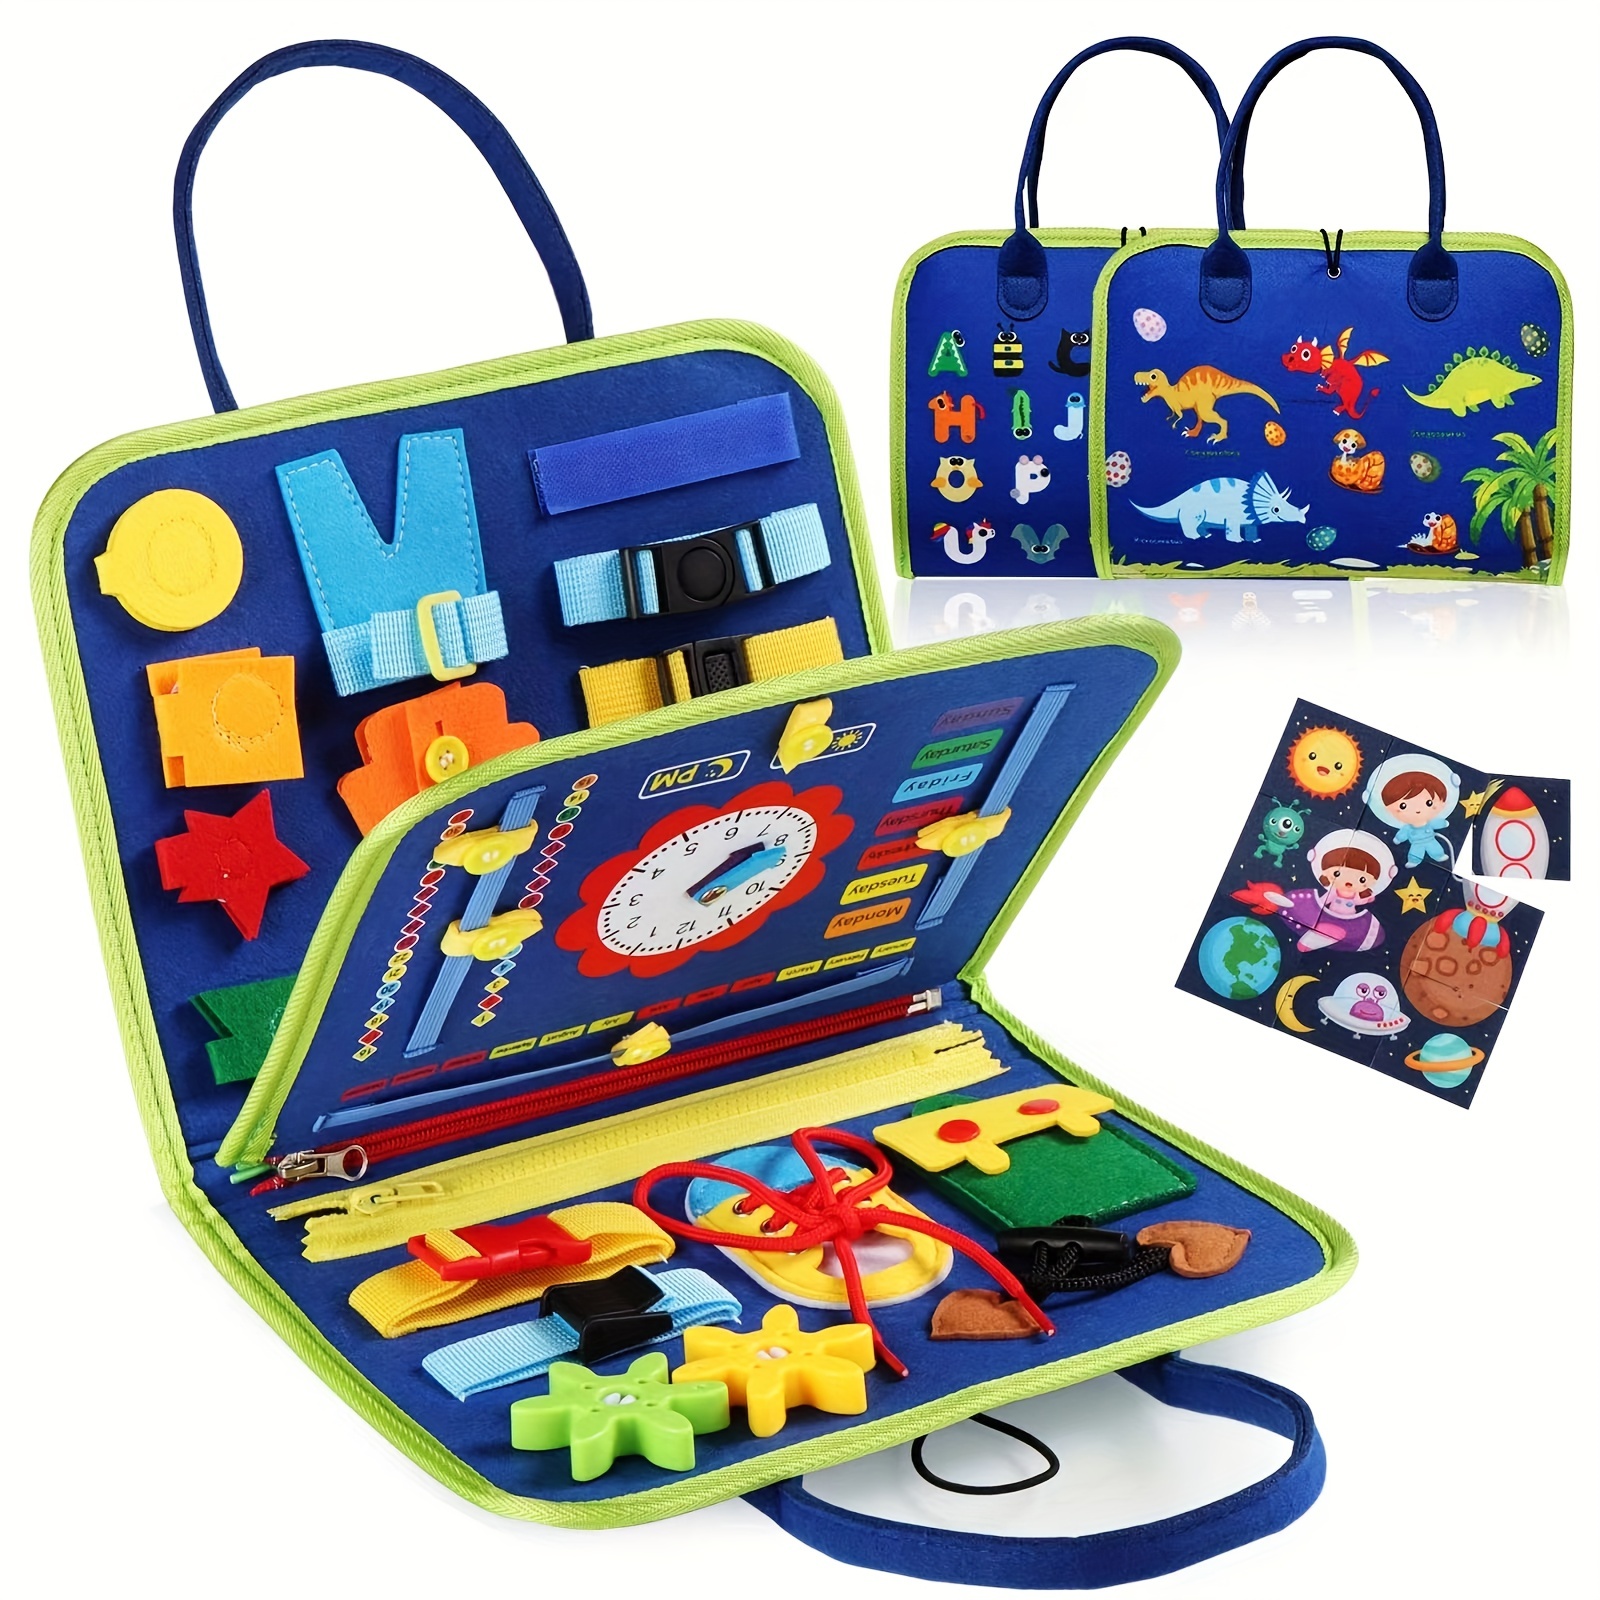 Juguete Montessori para niños pequeños de 1, 2, 3, 4 años, actividades  educativas, regalos de cumpleaños, desarrollo de juguetes sensoriales para